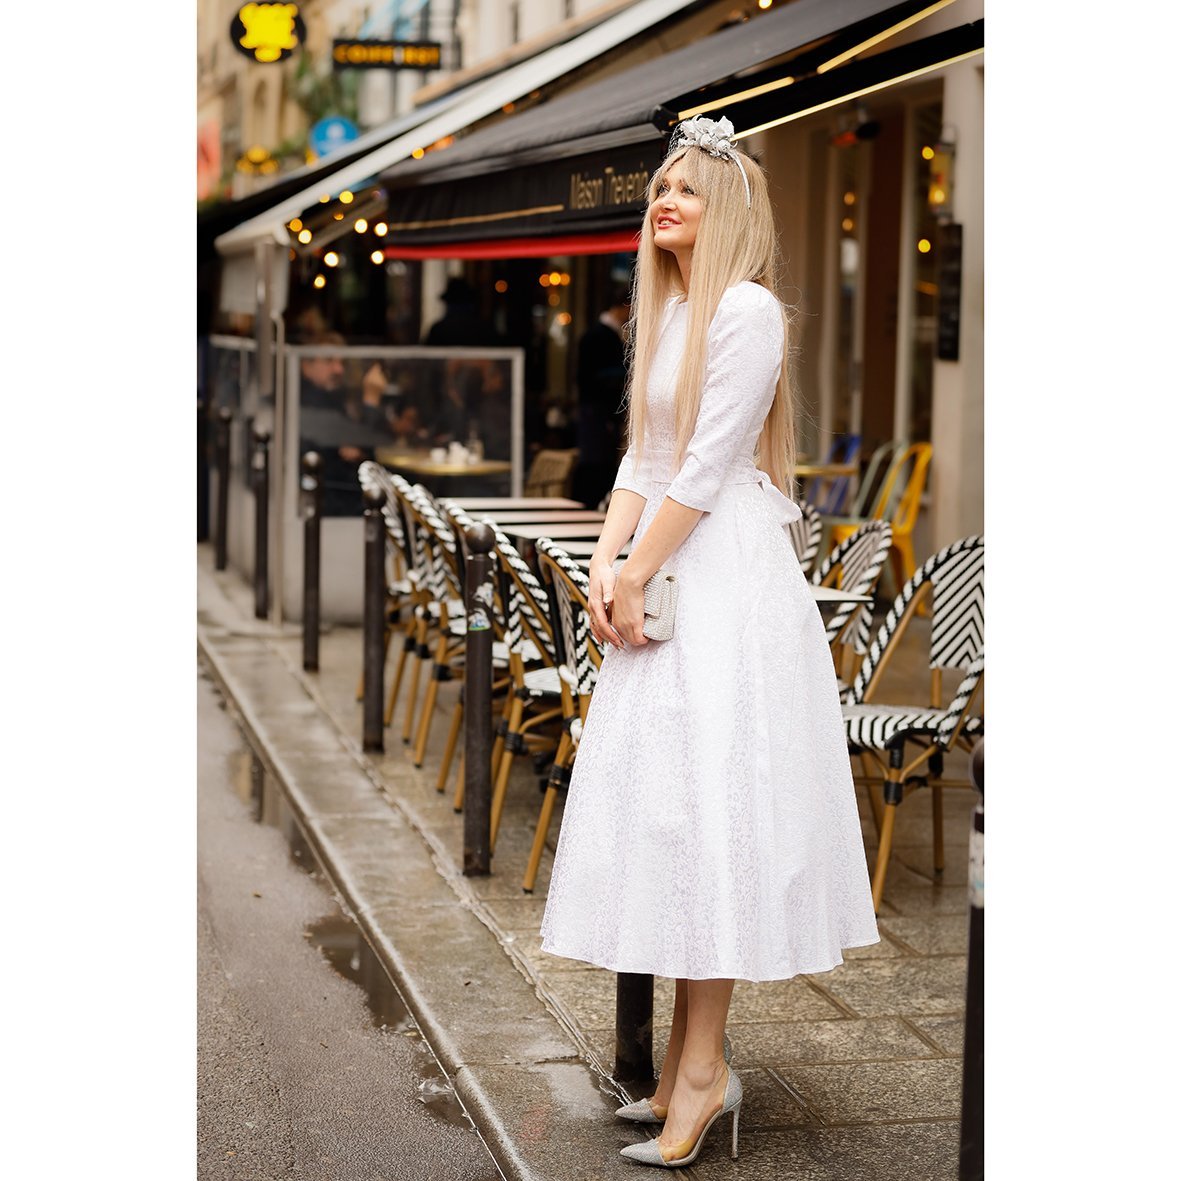 Jacquard dress "Alyzee" White - The Clothing Lounge Matsour'i